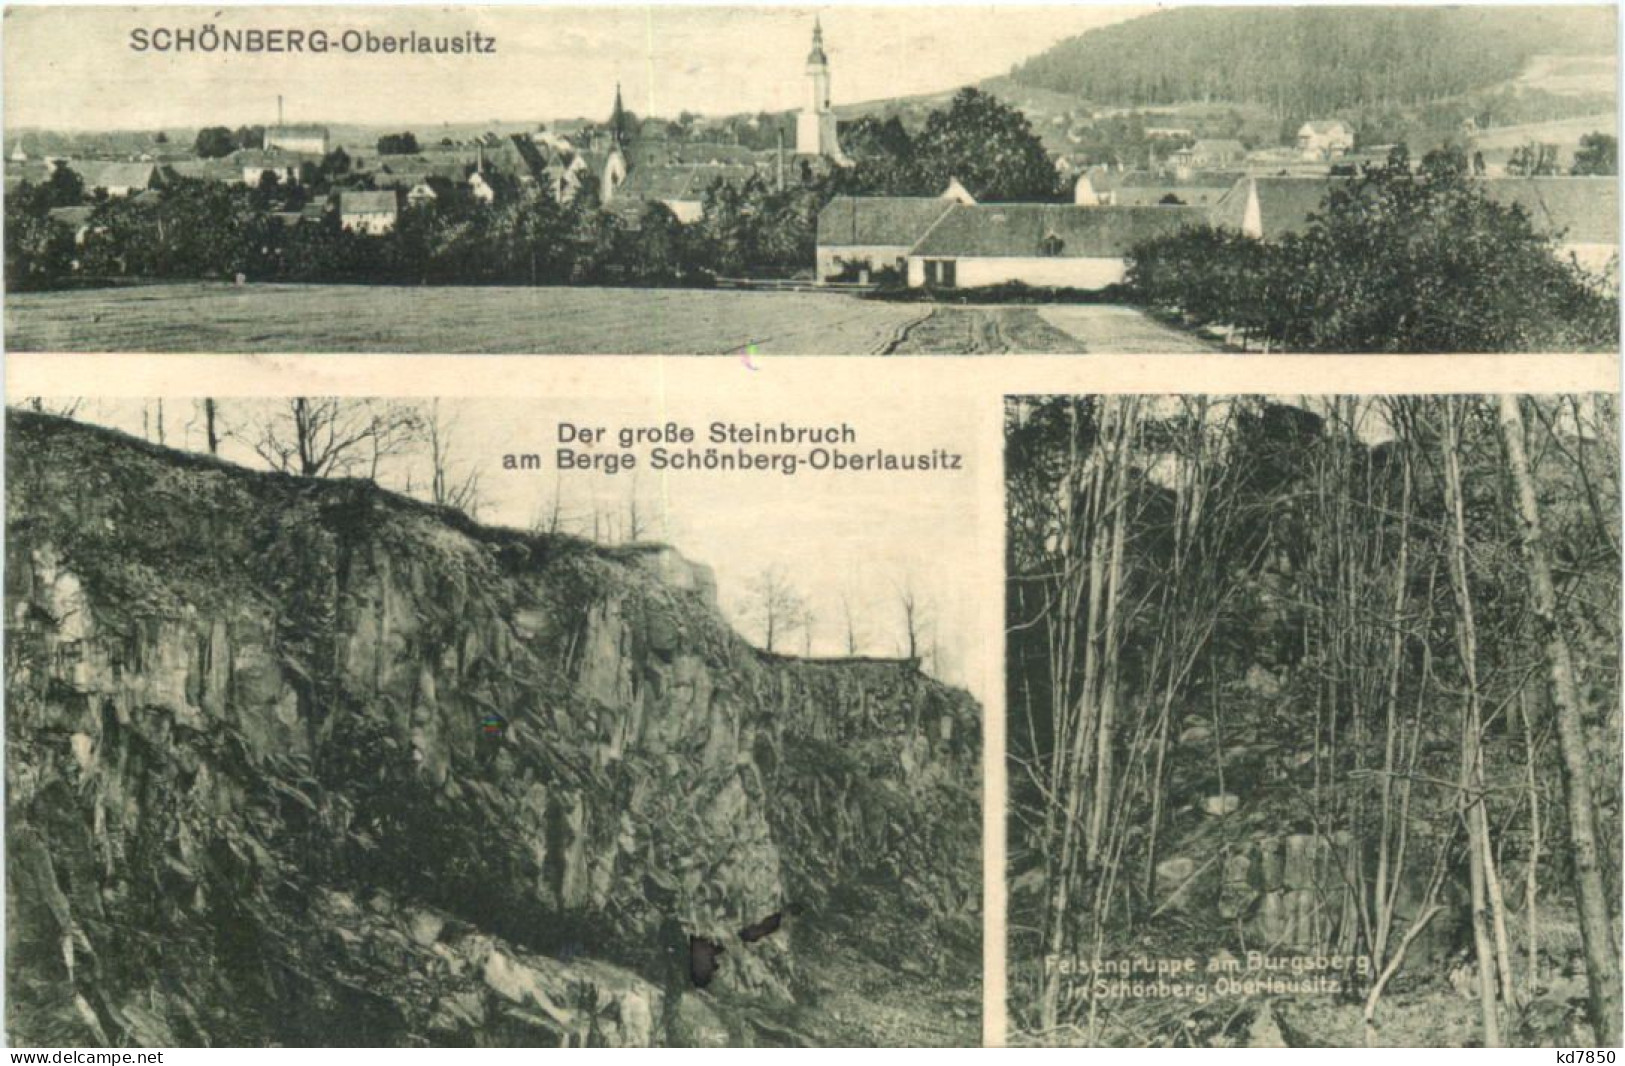 Schönberg - Oberlausitz - Goerlitz